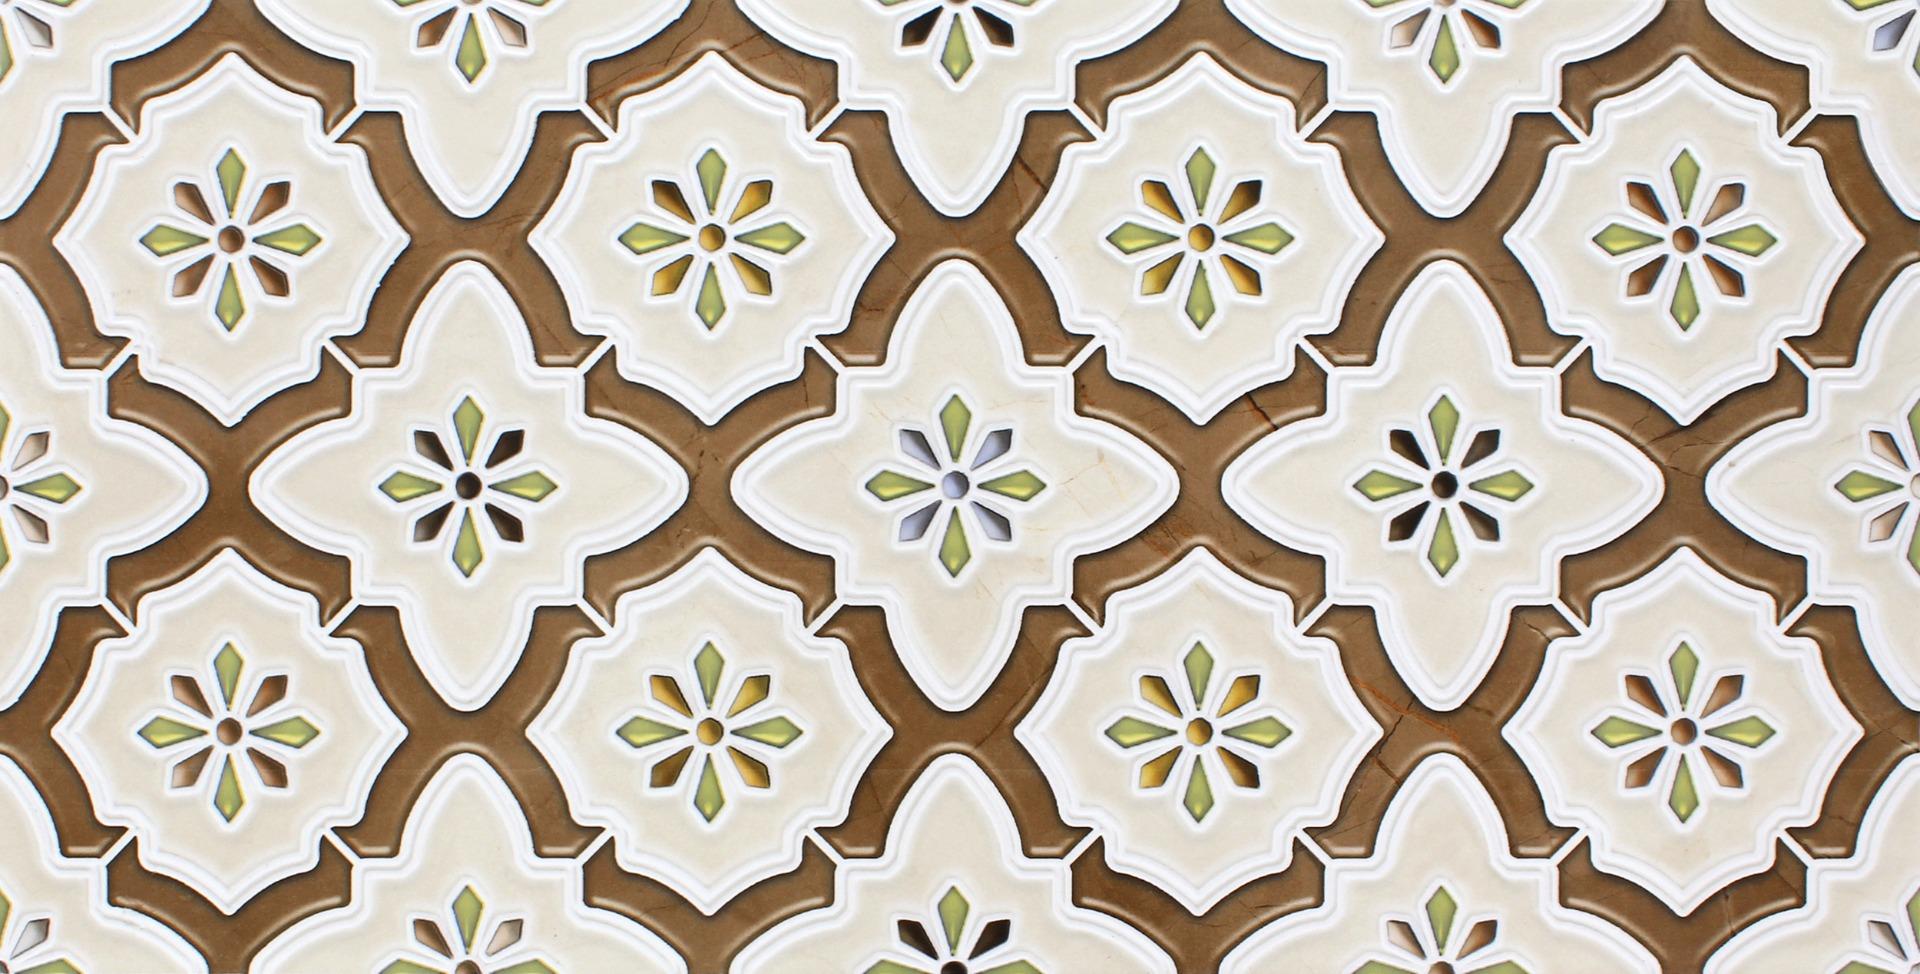 Green Tiles for Bathroom Tiles, Living Room Tiles, Kitchen Tiles, Bedroom Tiles, Balcony Tiles